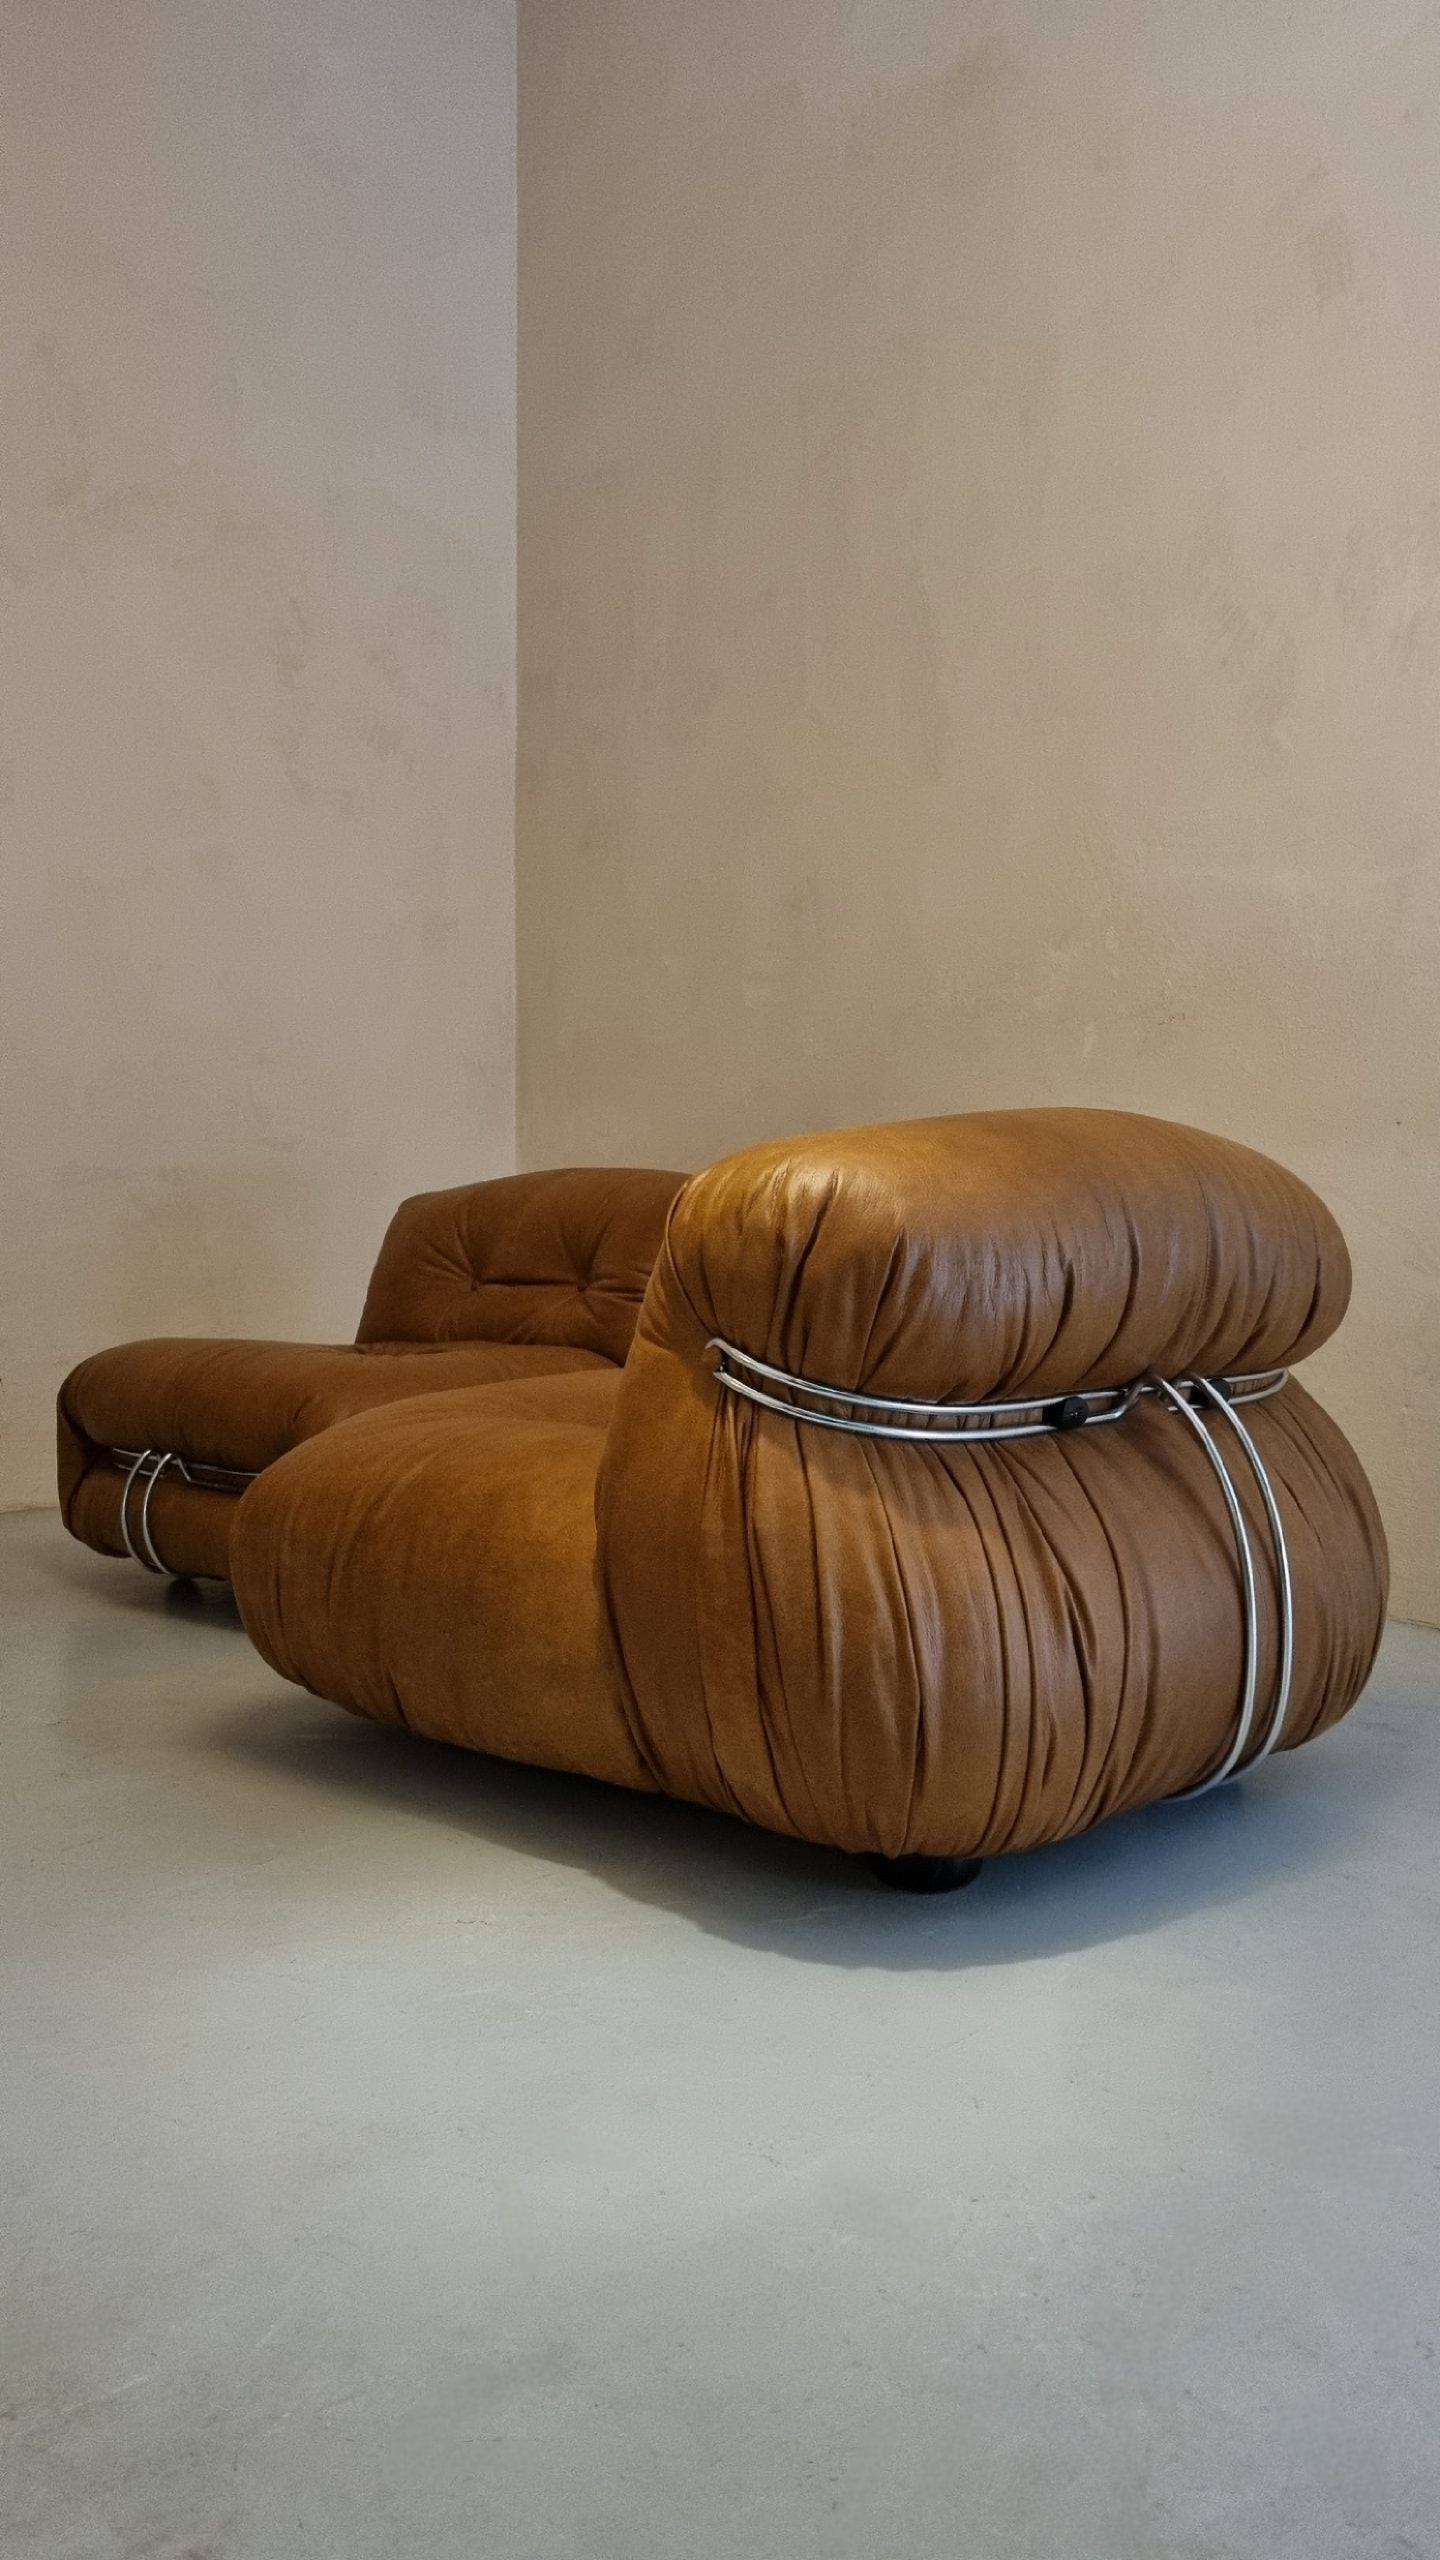 Soriana Chair by Tobia Scarpa